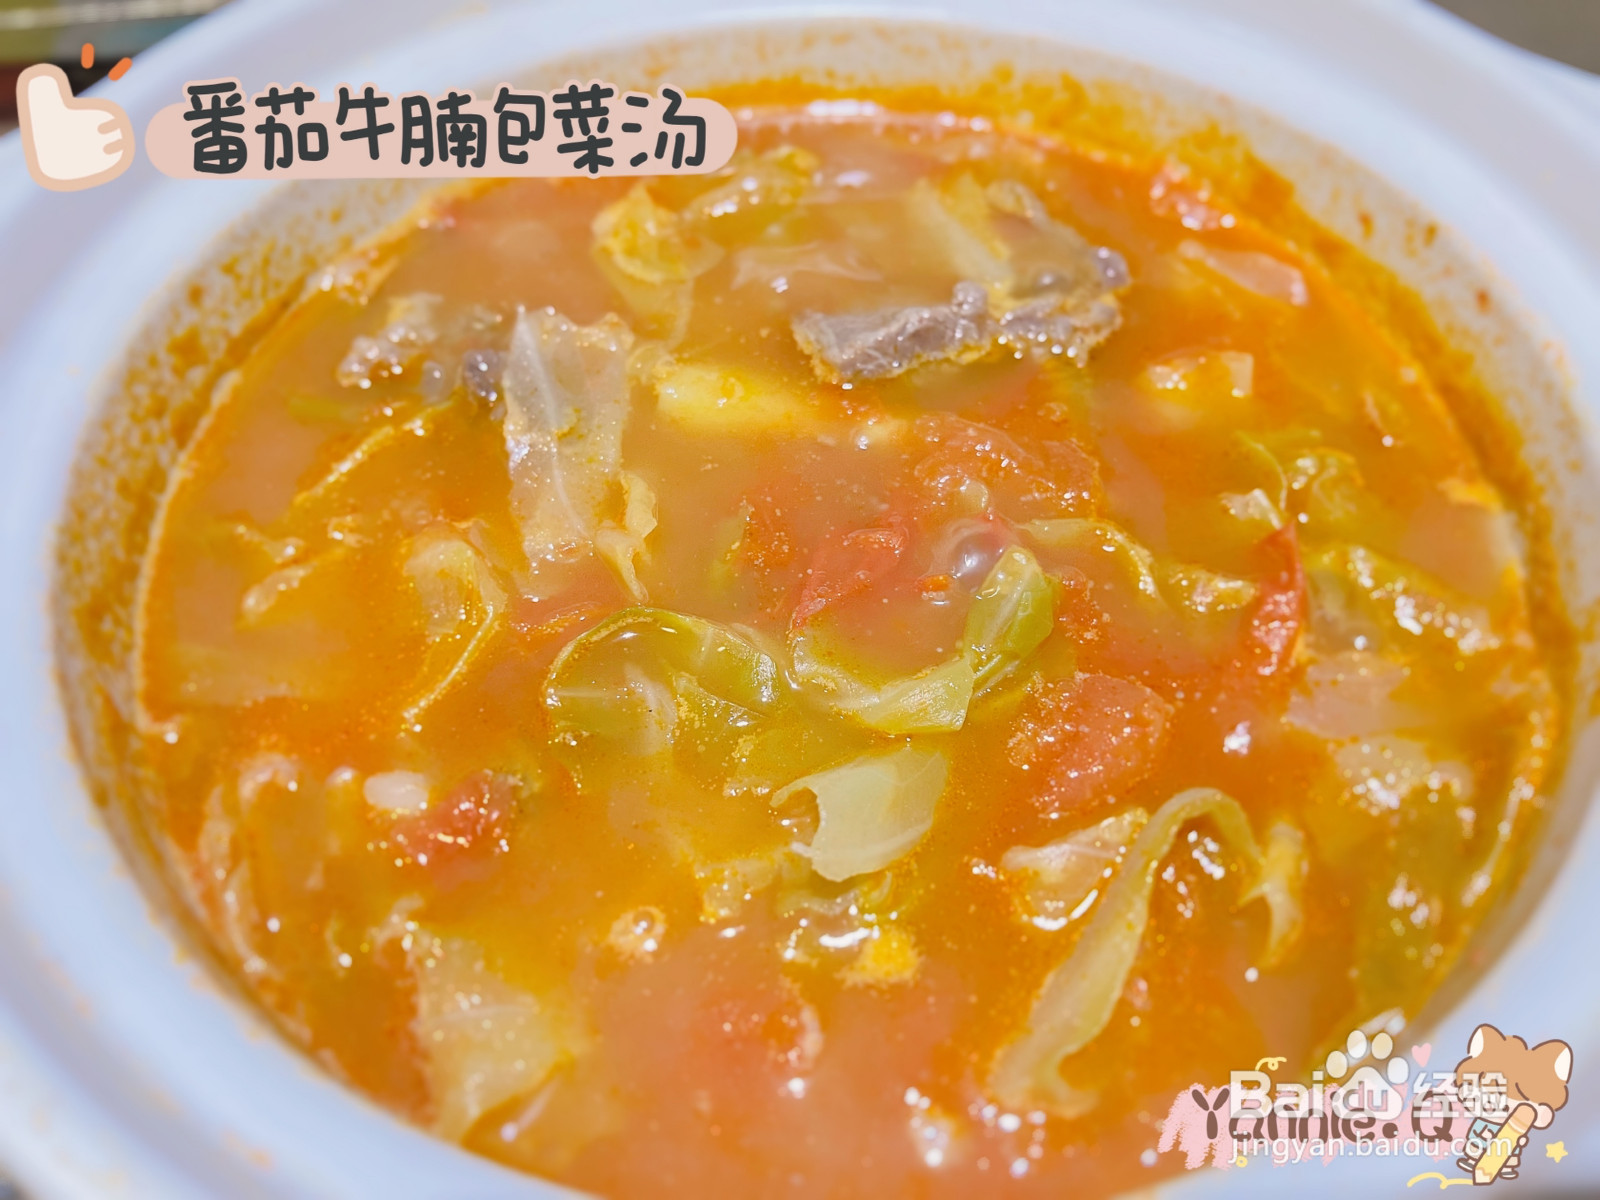 番茄牛腩包菜汤的做法